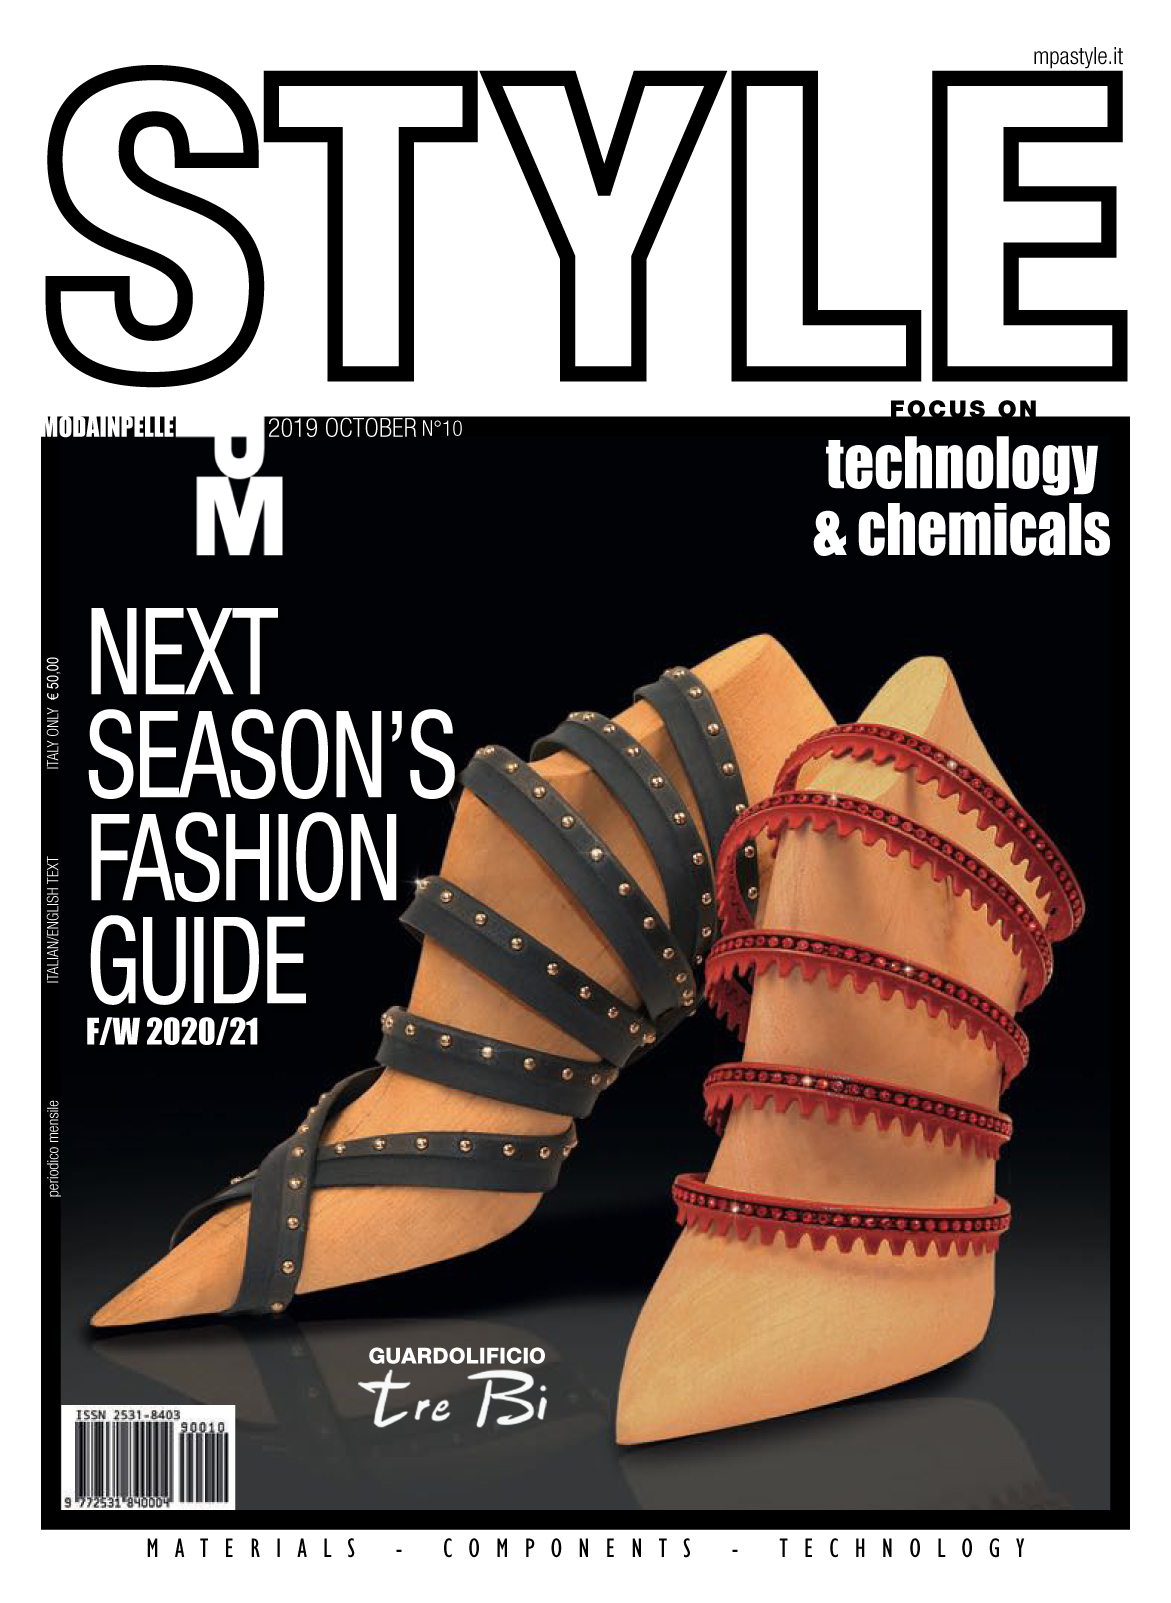 《Moda Pelle Style》意大利鞋包皮具专业杂志2019年10月号